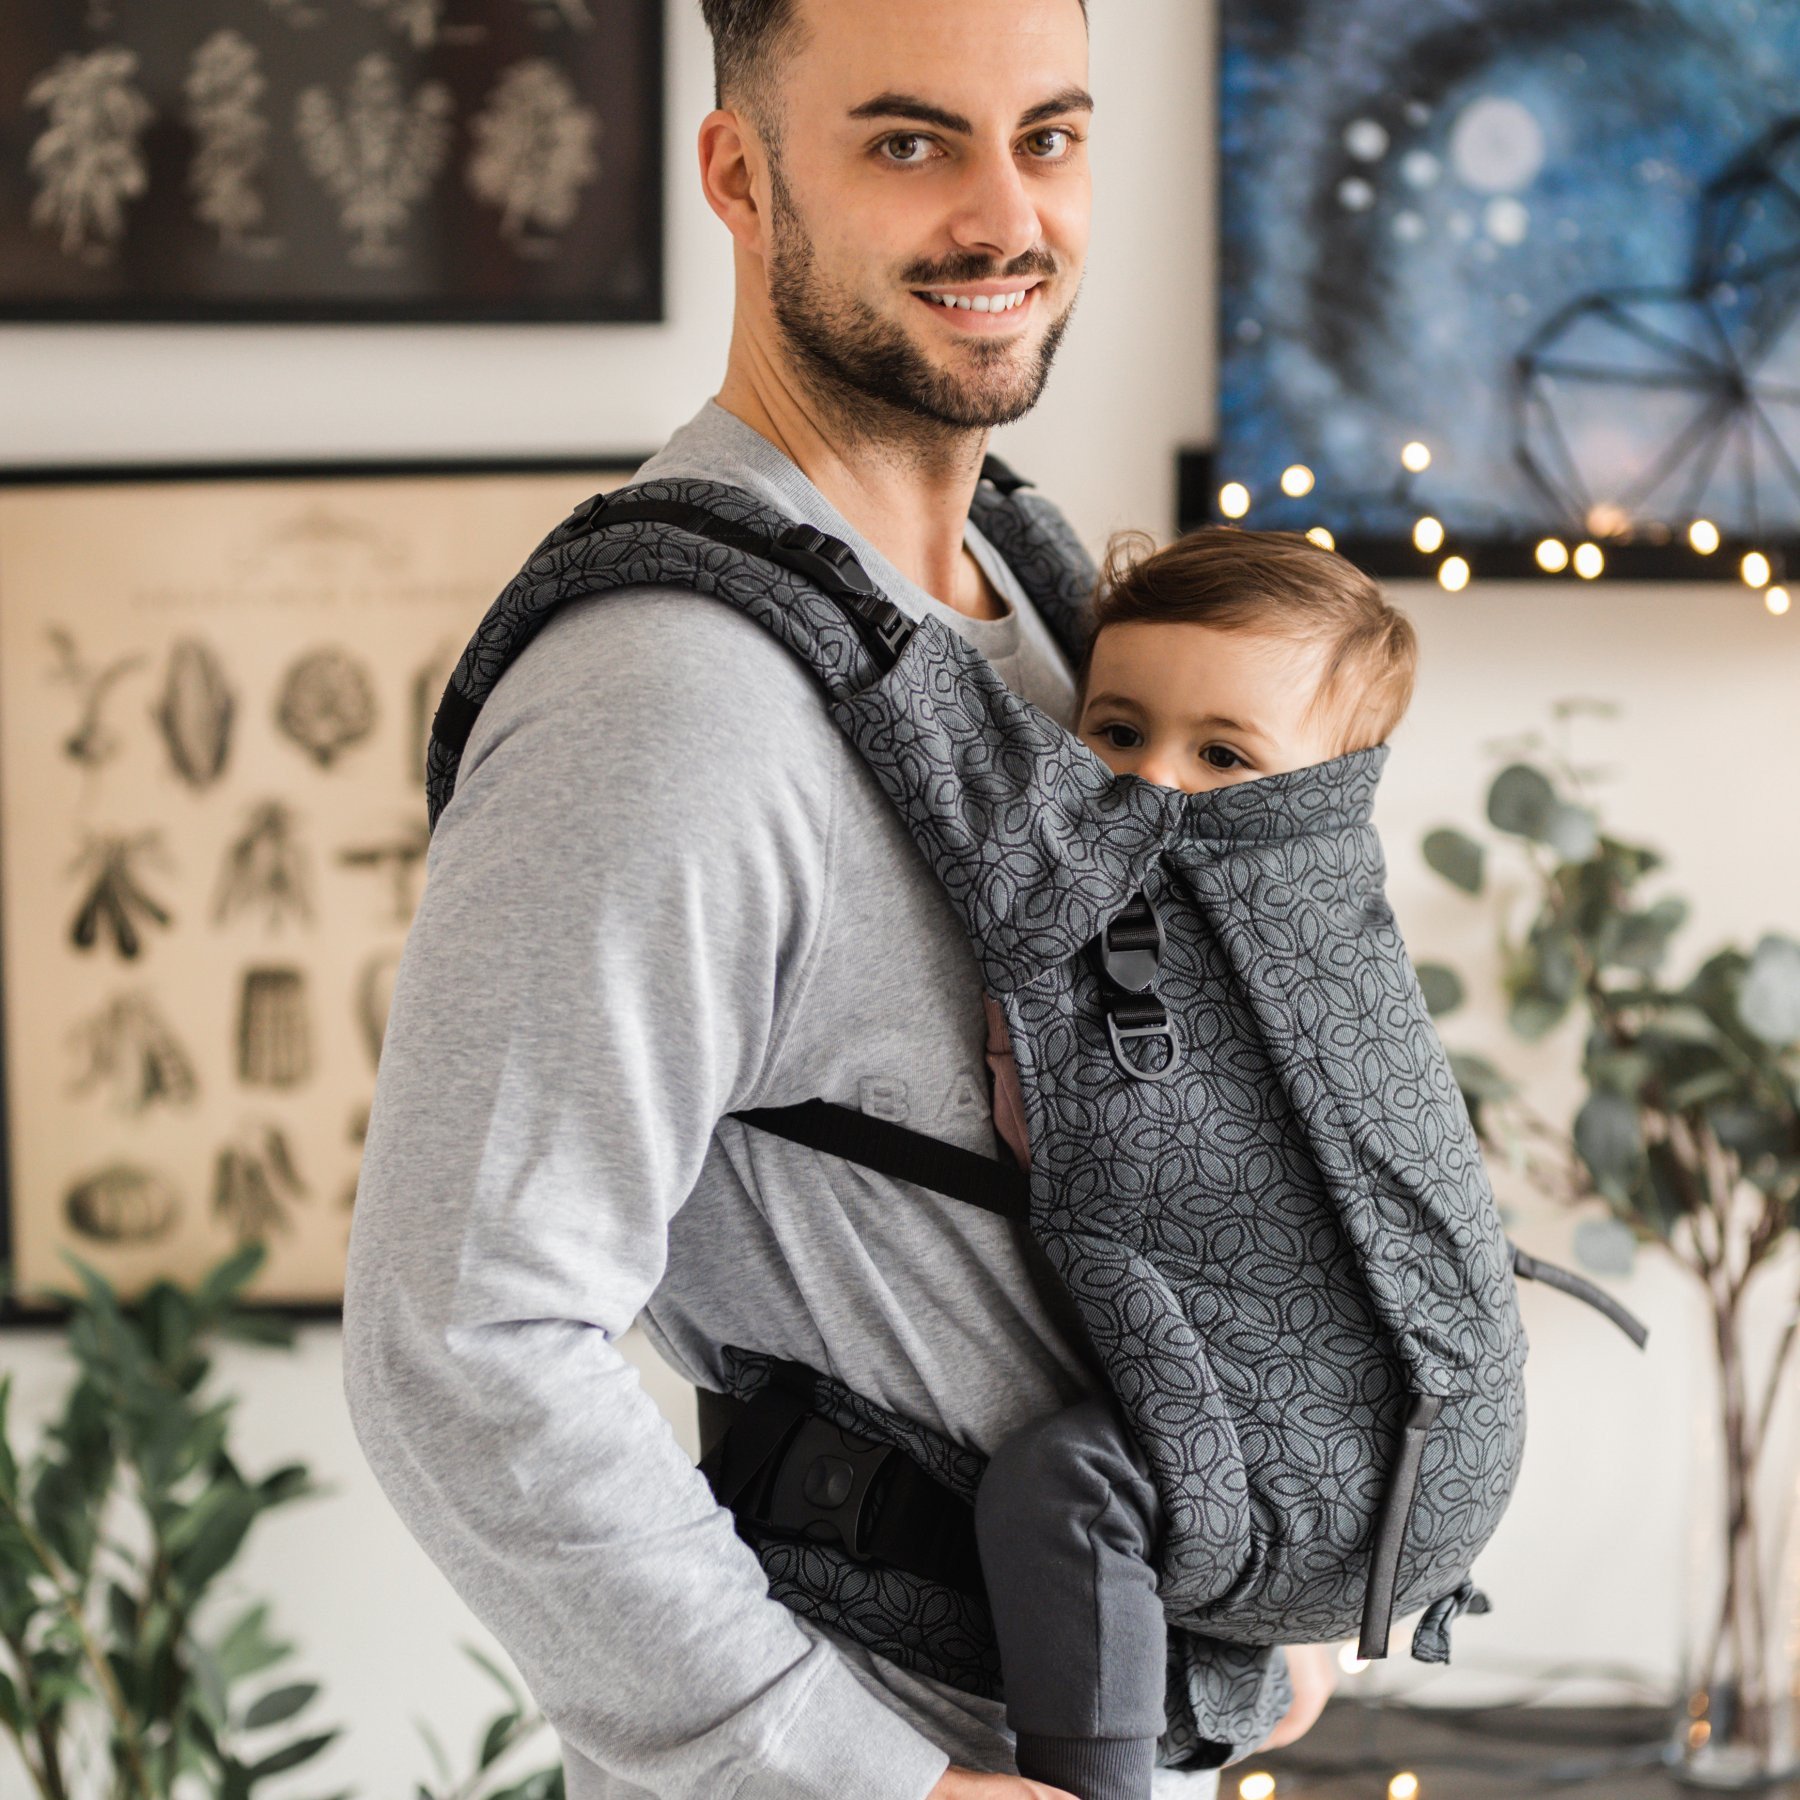 porte-bébé BE LENKA 4ever Neo Ivy Dark Grey évolutif physiologique portage pratique simple confortable ergonomique